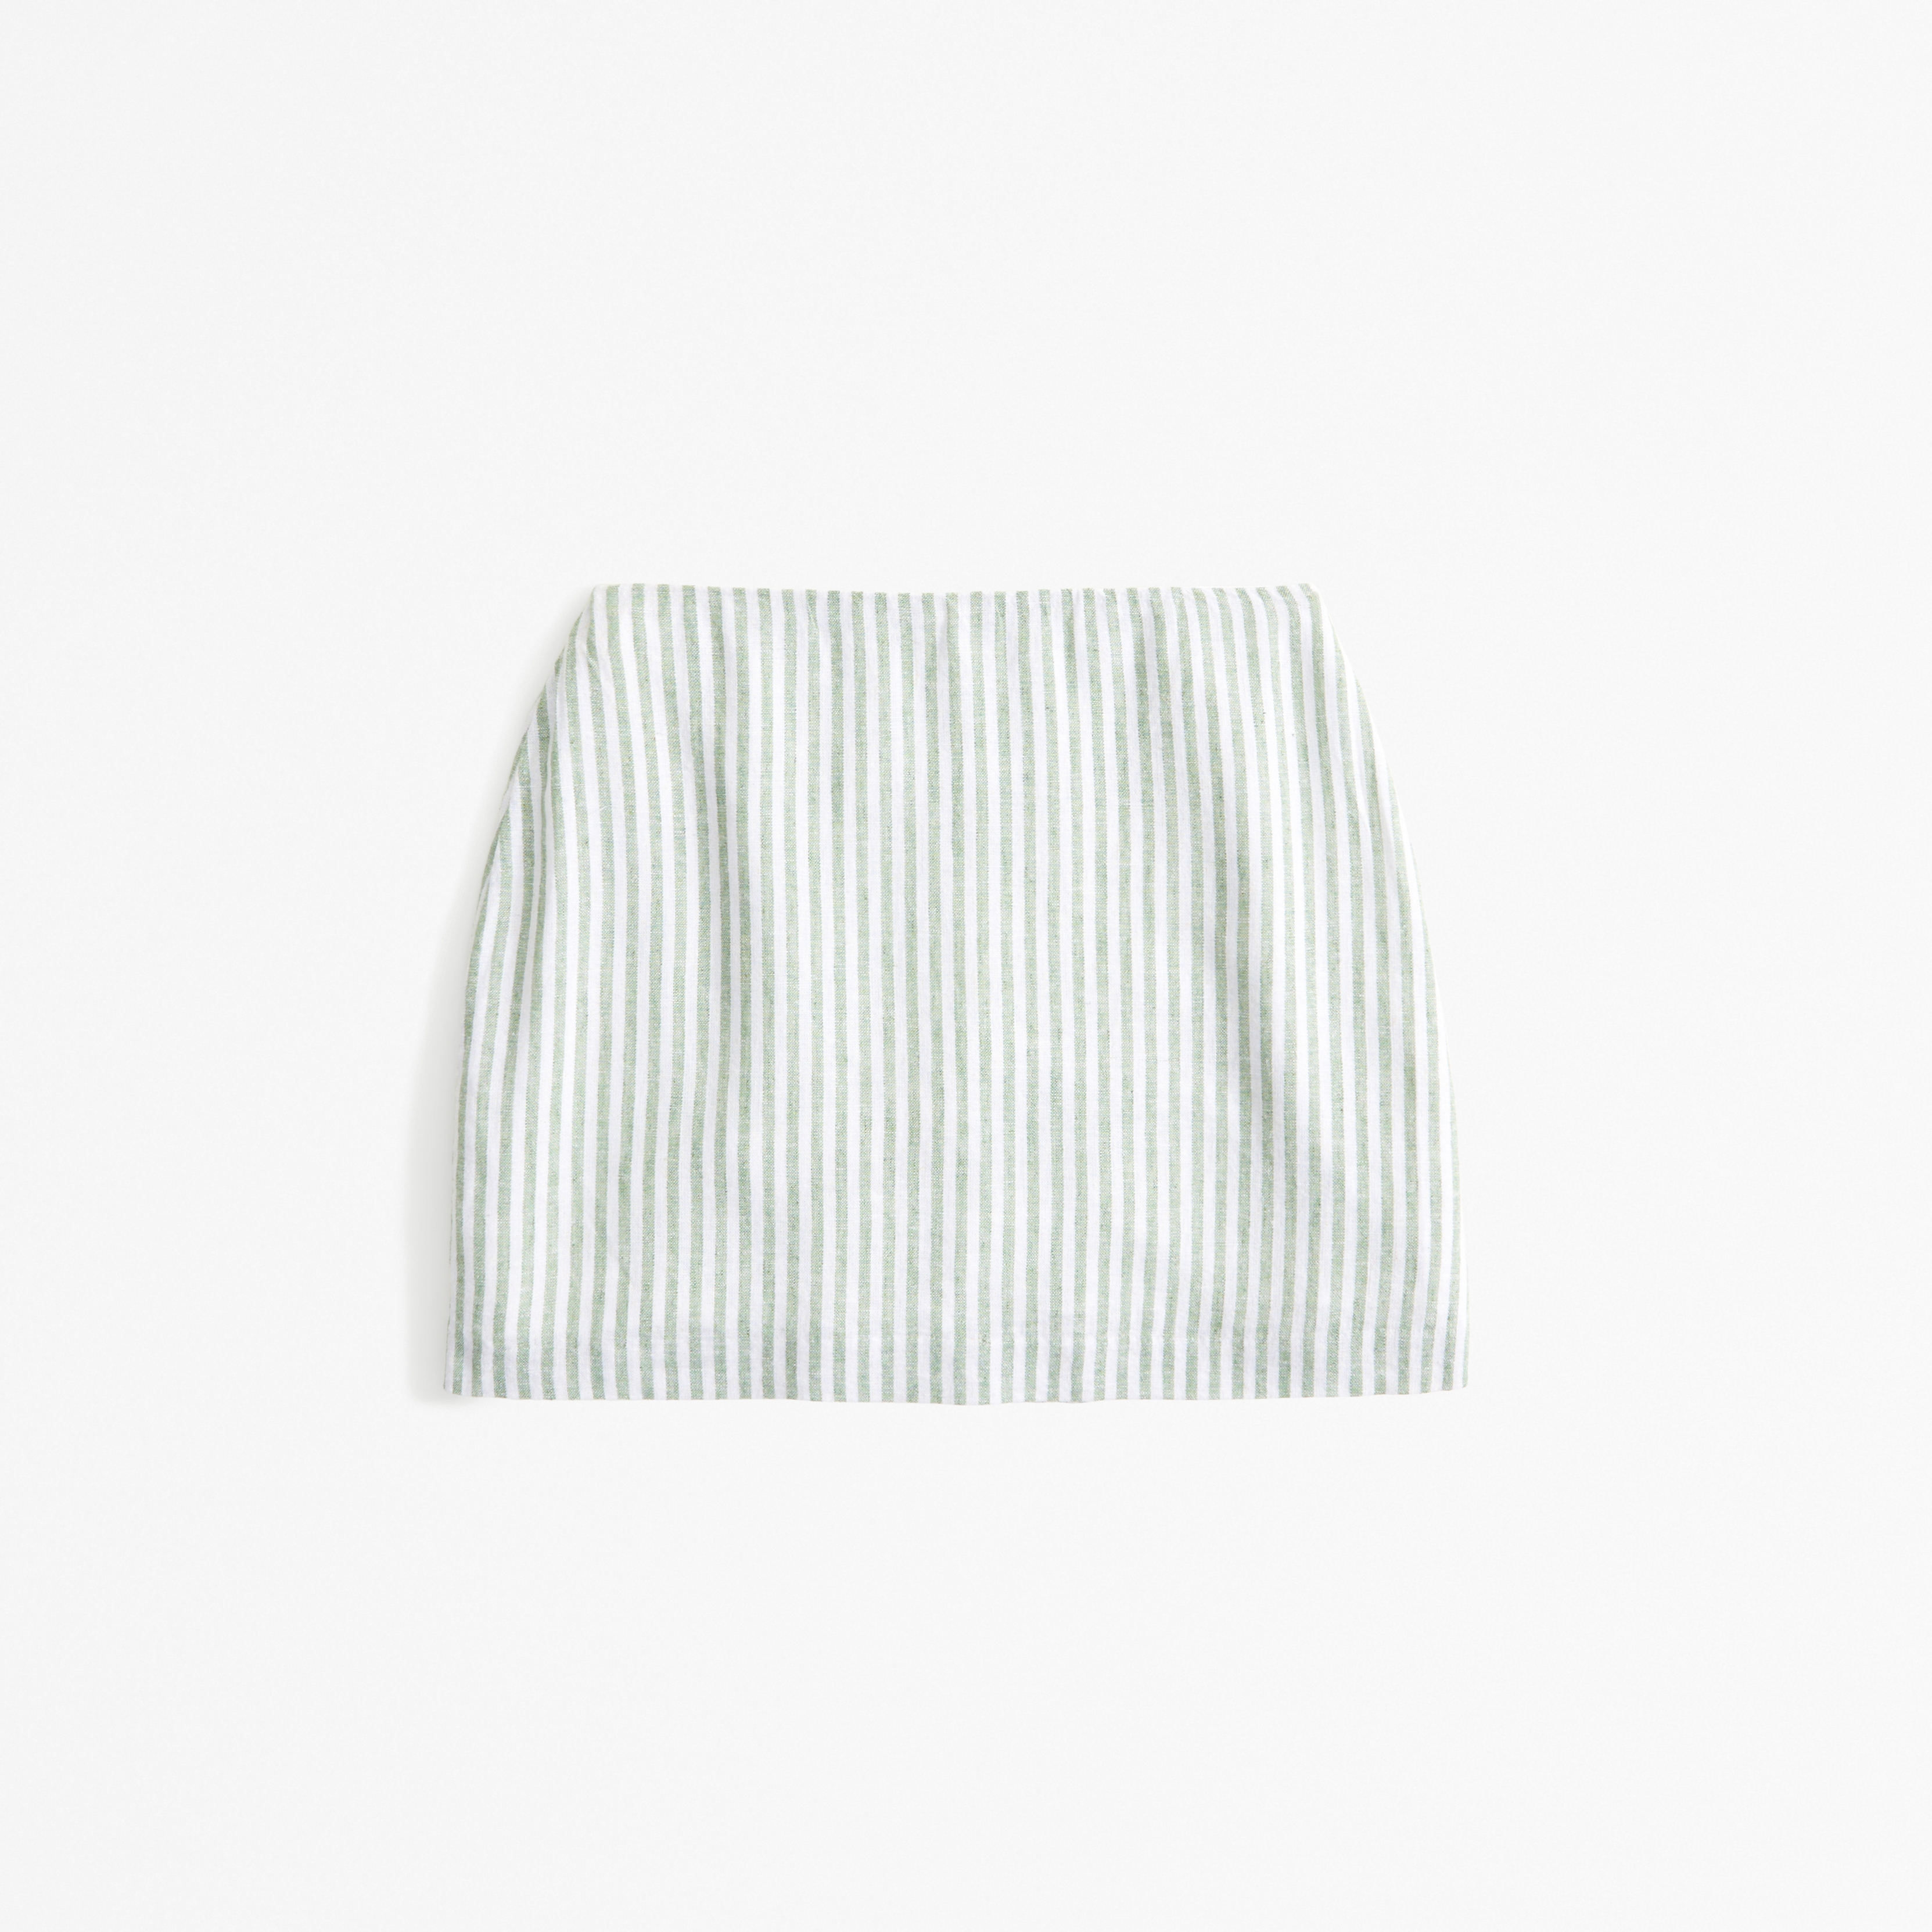 Linen Blend Mini Skirt